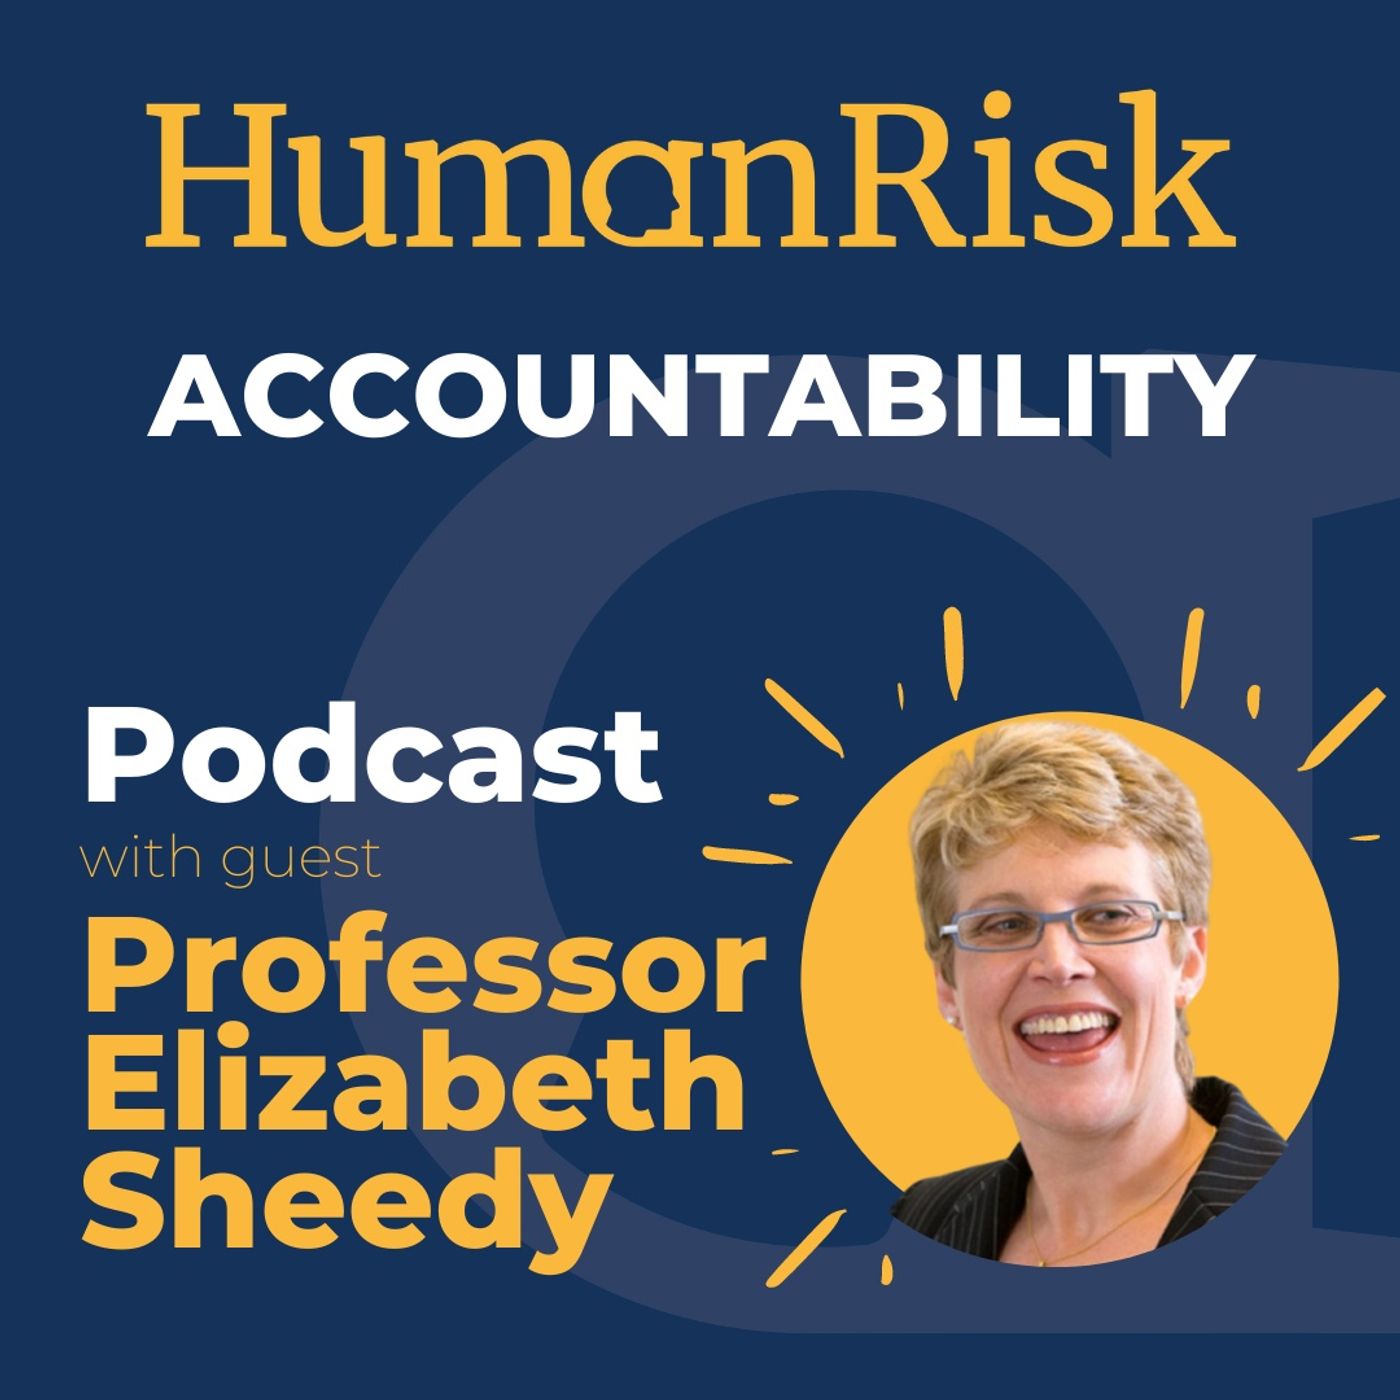 Professor Elizabeth Sheedy on how Accountability can reduce Human Risk